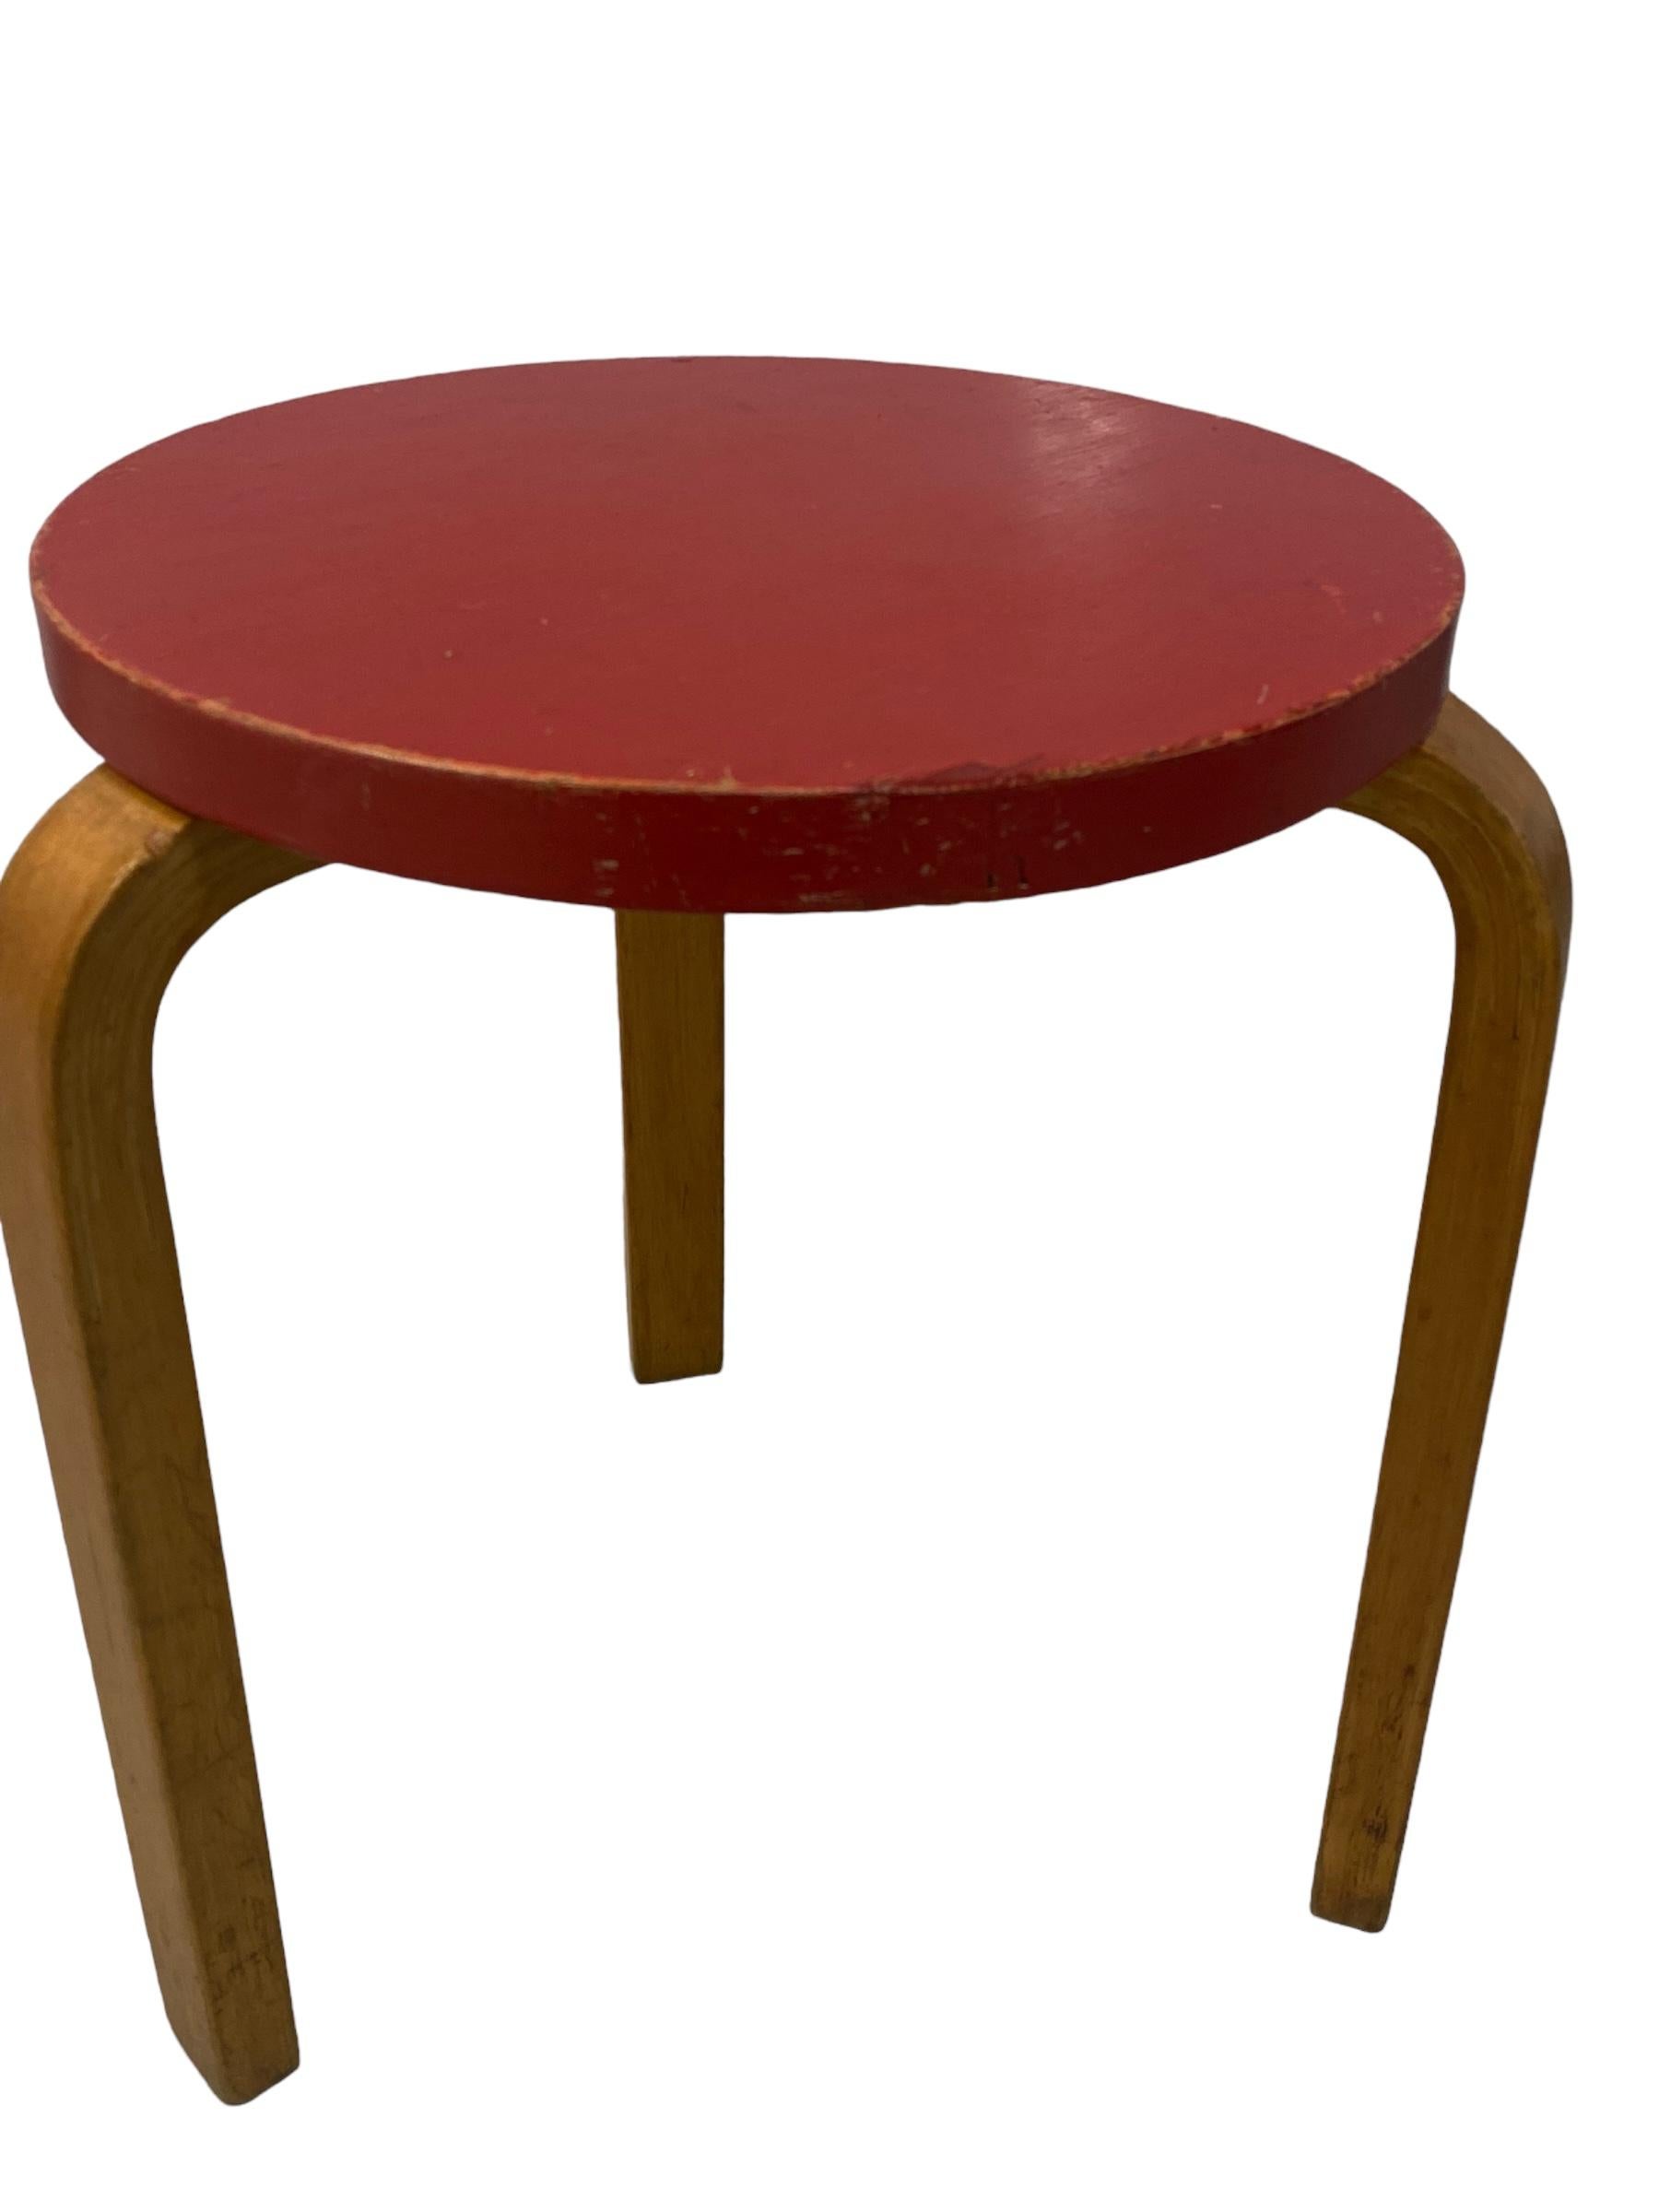 Ein ikonischer roter Modell 60 Hocker aus Birke mit schöner Patina. Dieses von Alvar Aalto in den 1940er Jahren für Artek entworfene Design hat sich definitiv bewährt, denn es wird immer noch produziert und ist bei den Verbrauchern nach wie vor